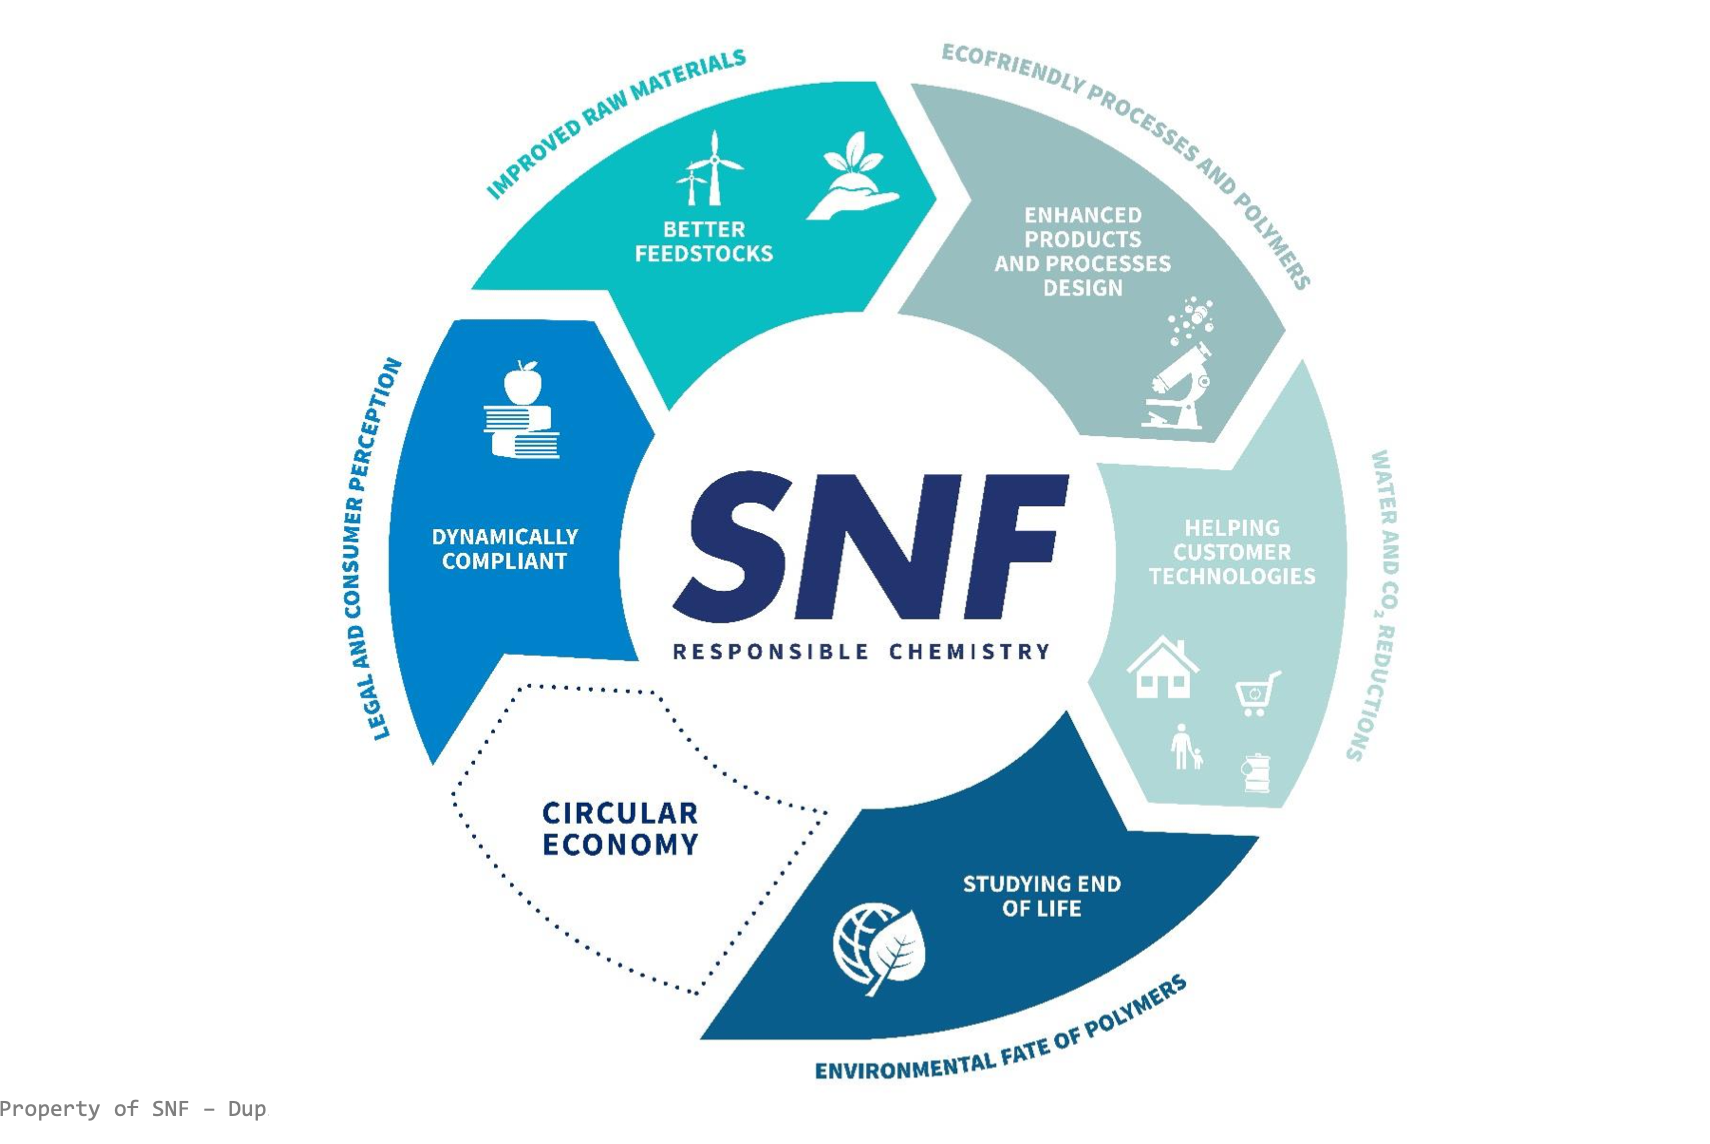 SNF – химия с ответственным подходом